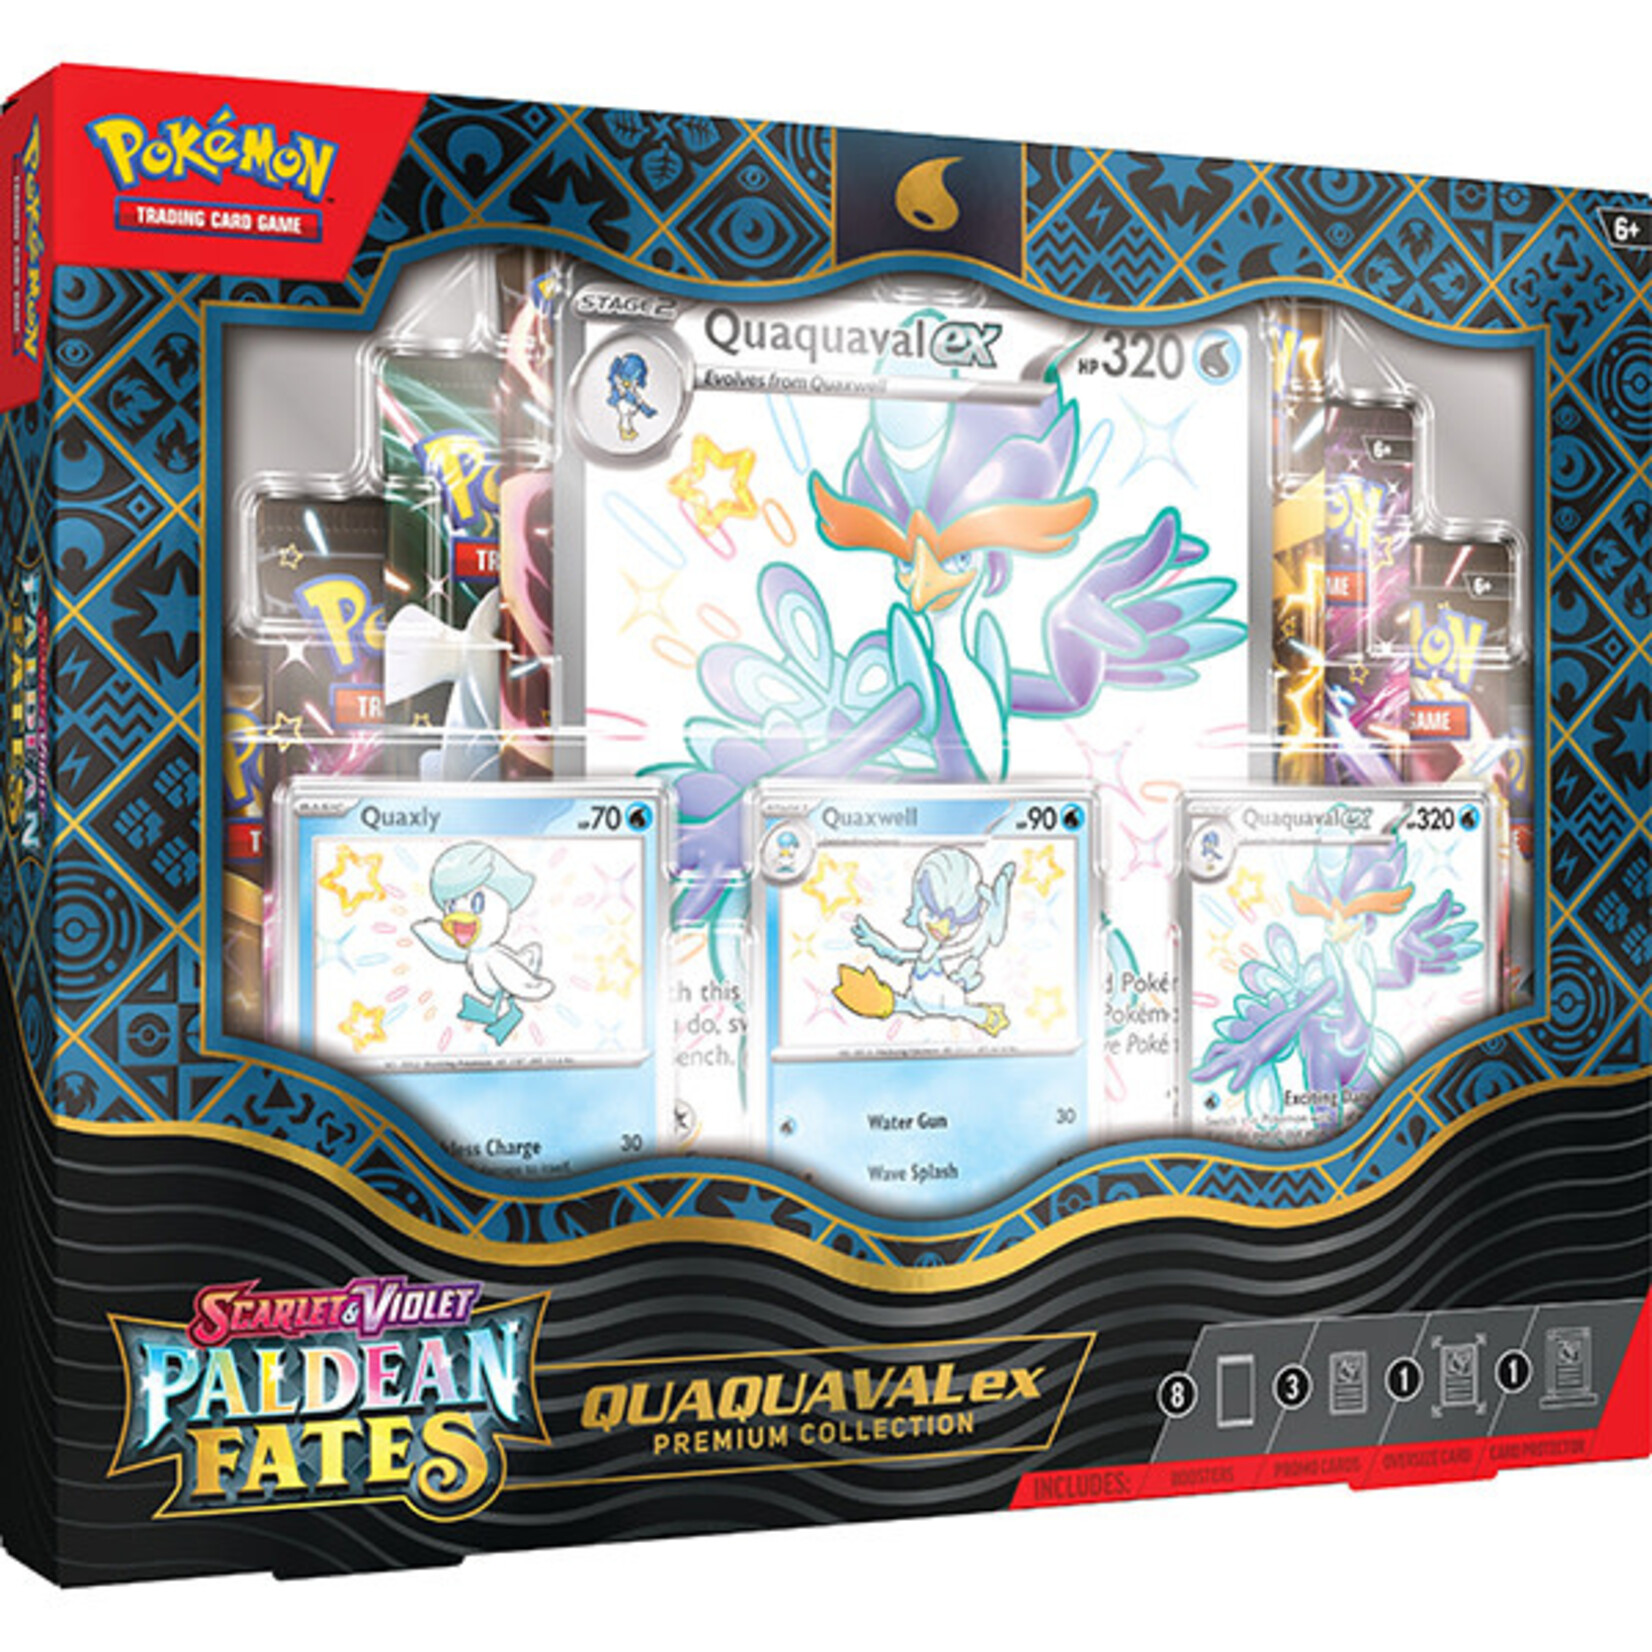 Pokémon Pokémon Trading Card Game: Paldean Fates ex Premium Collection Box (Quaquaval)